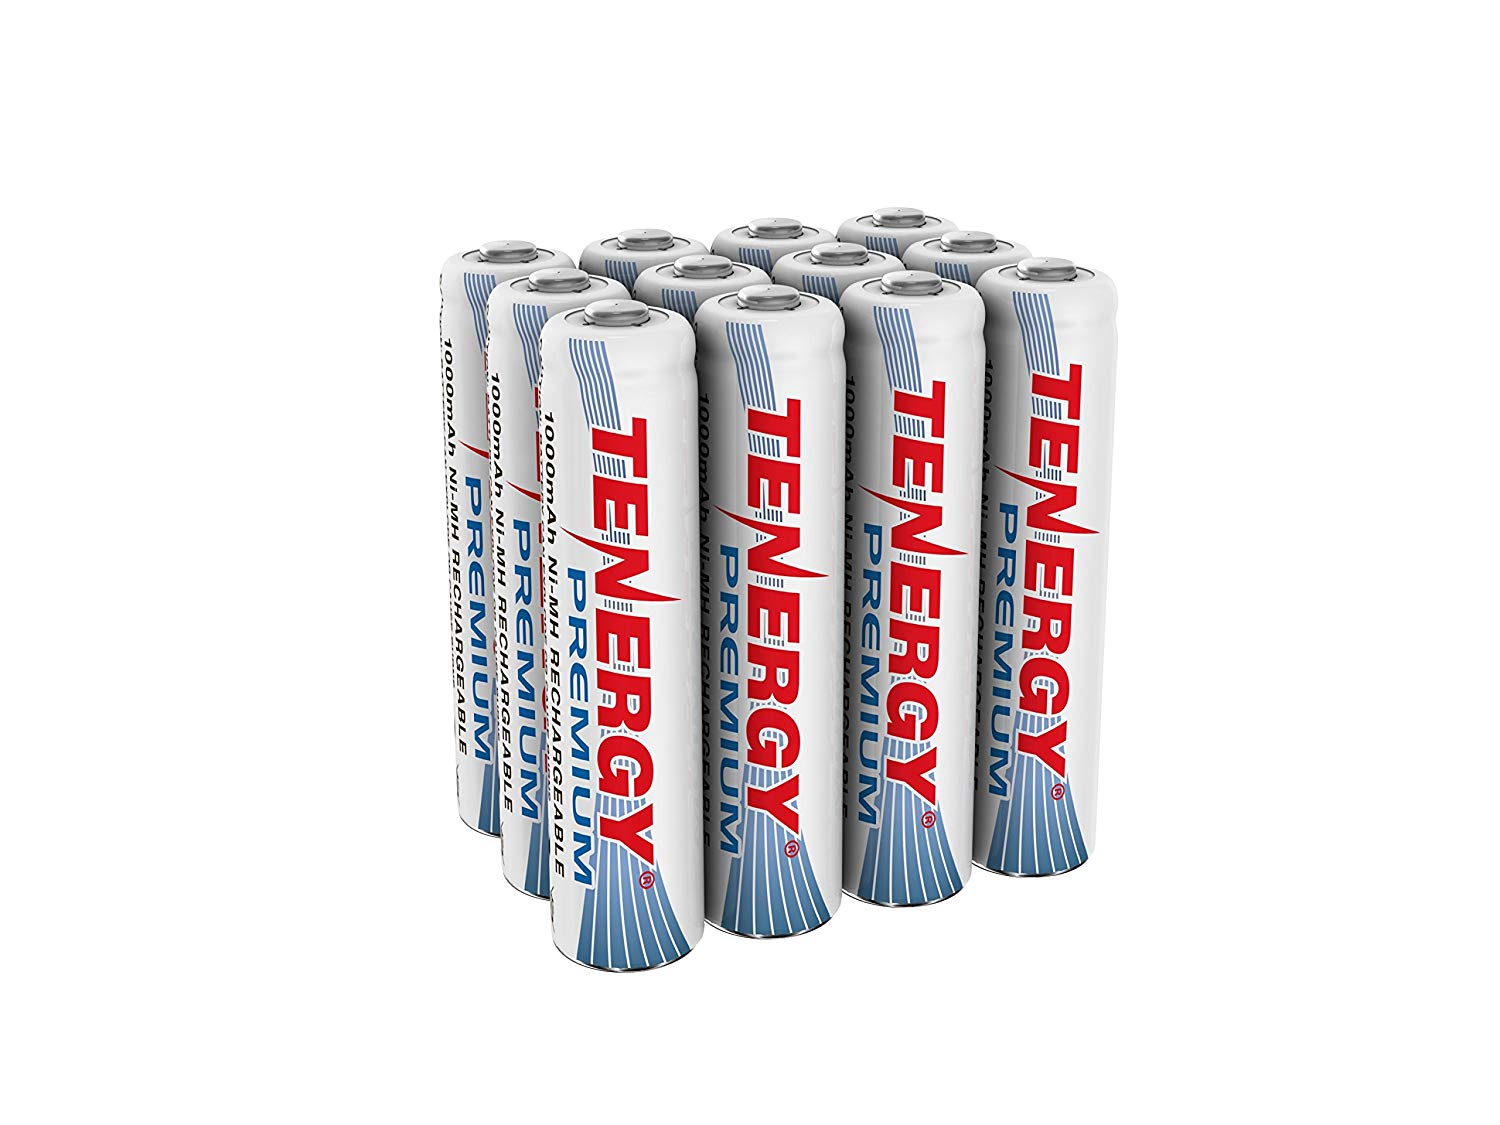 Baterías AAA recargables Premium de Tenergy NiMH de alta capacidad de 1000 mAh paquete de 12